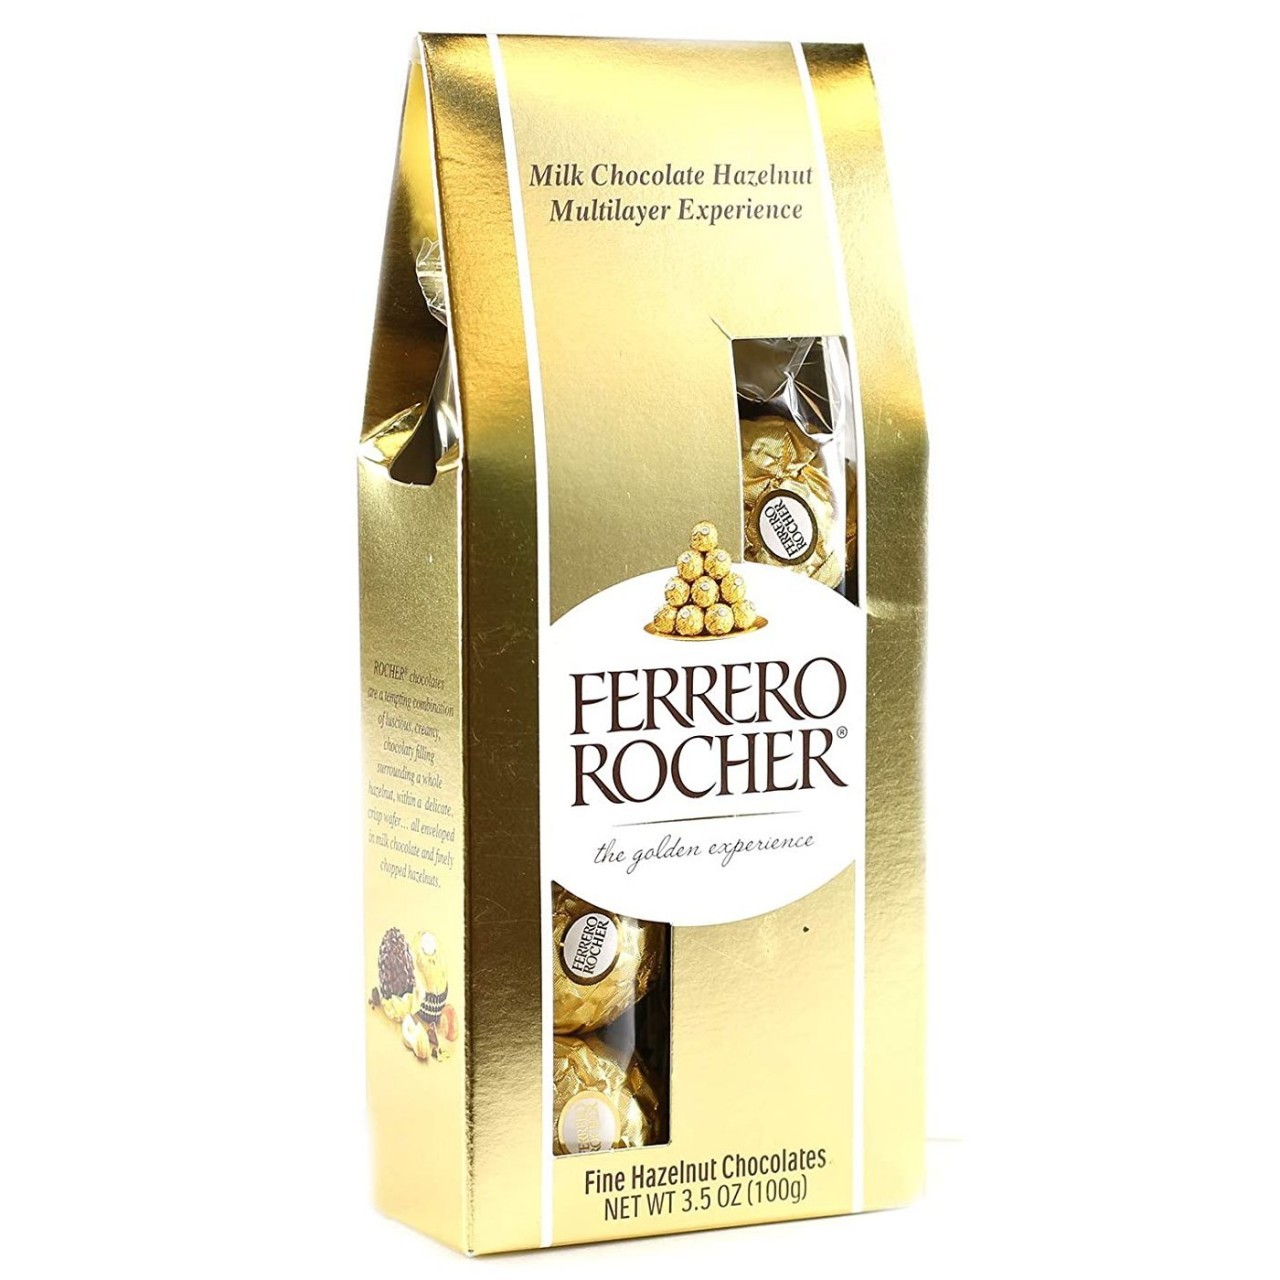 FERRERO ROCHER HAZELNUT CHOC 150g